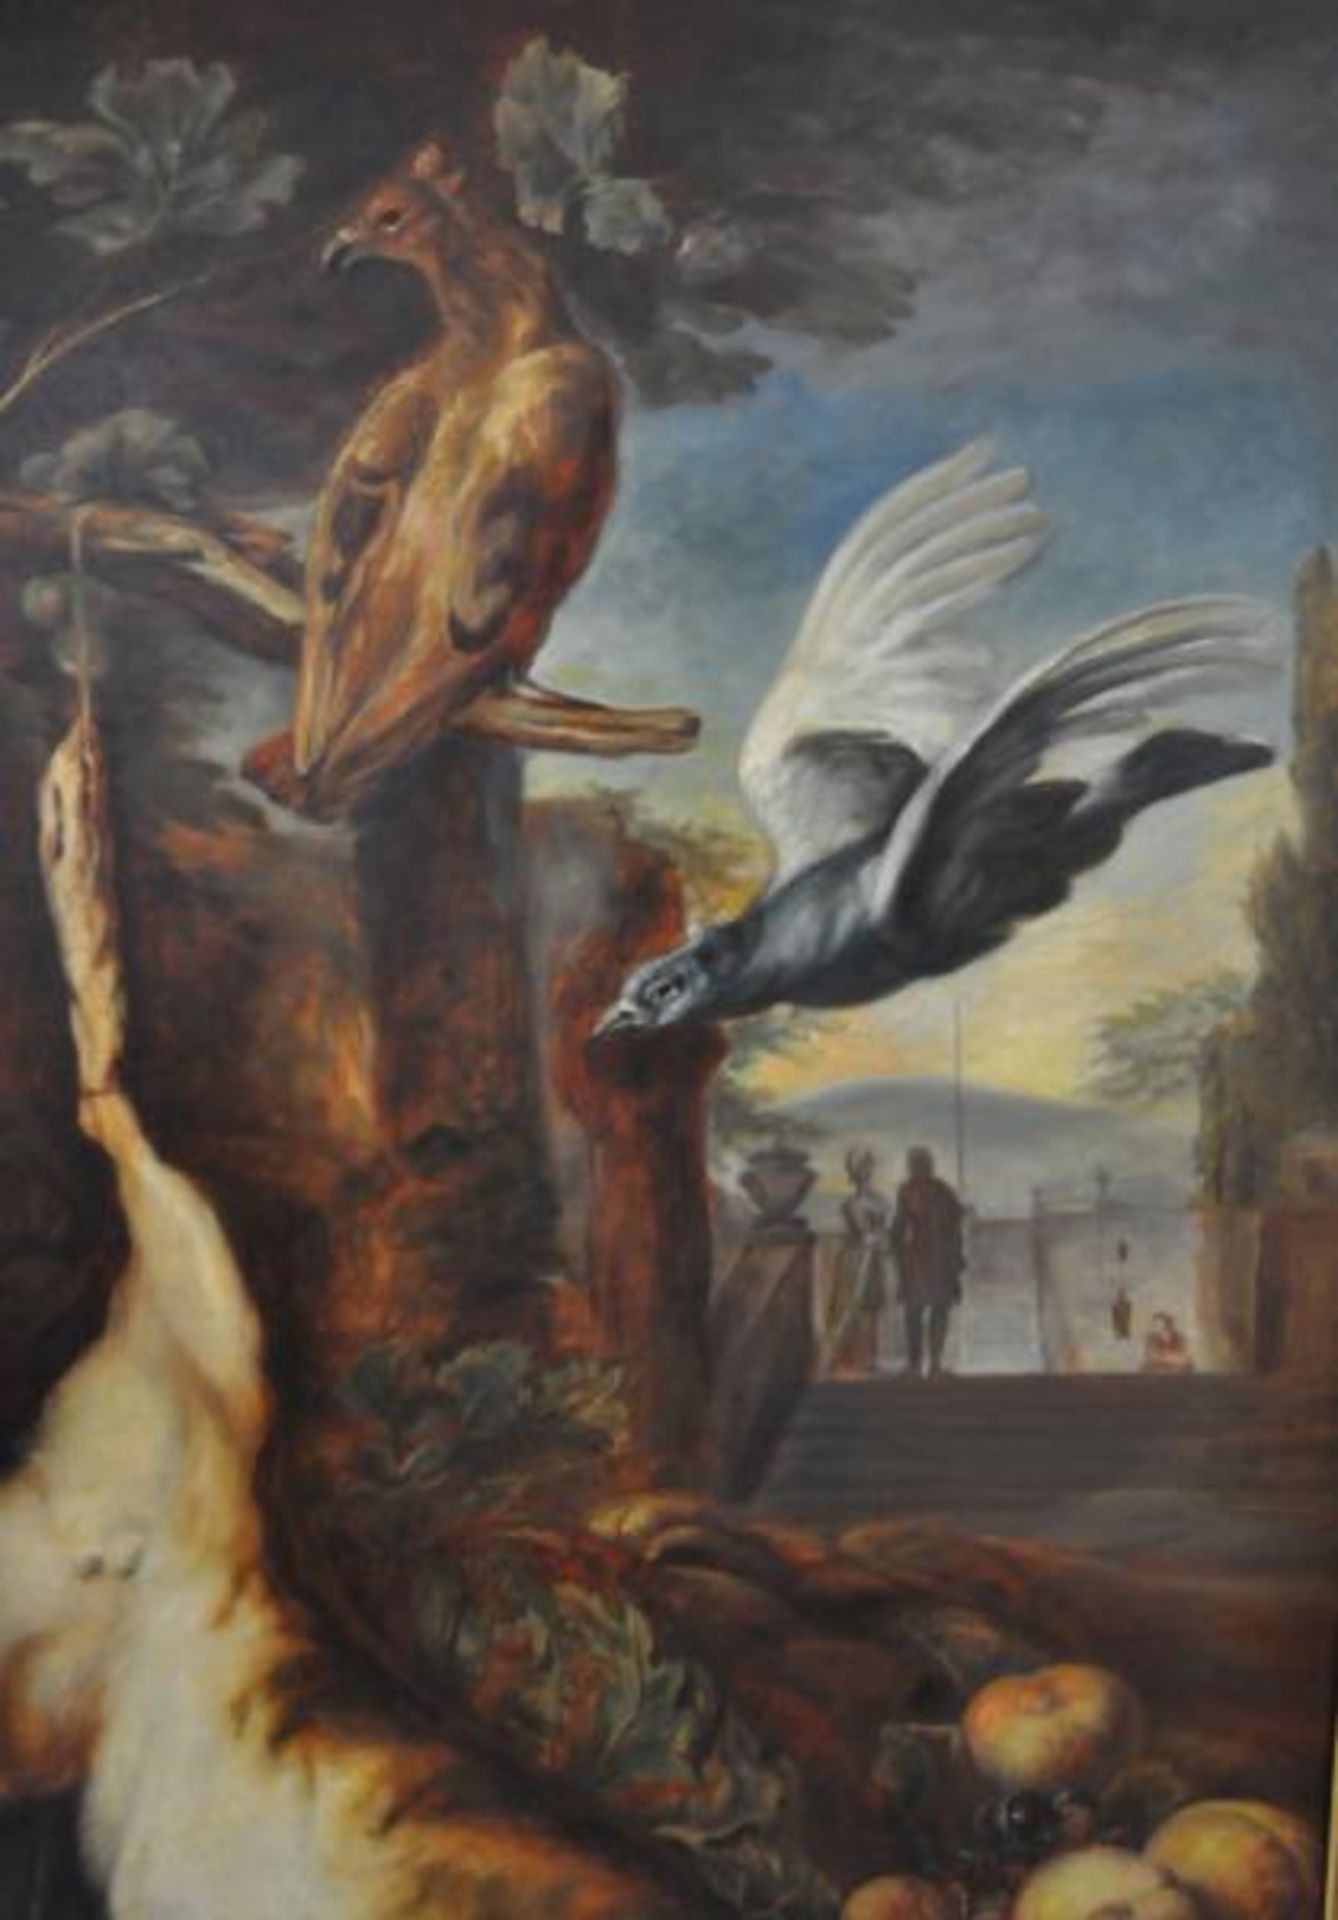 STILLLEBENMALER (19./20.Jh.) "Jagdstillleben", mit totem Hasen u. Vögeln, im Hintergrund Treppe - Bild 3 aus 4